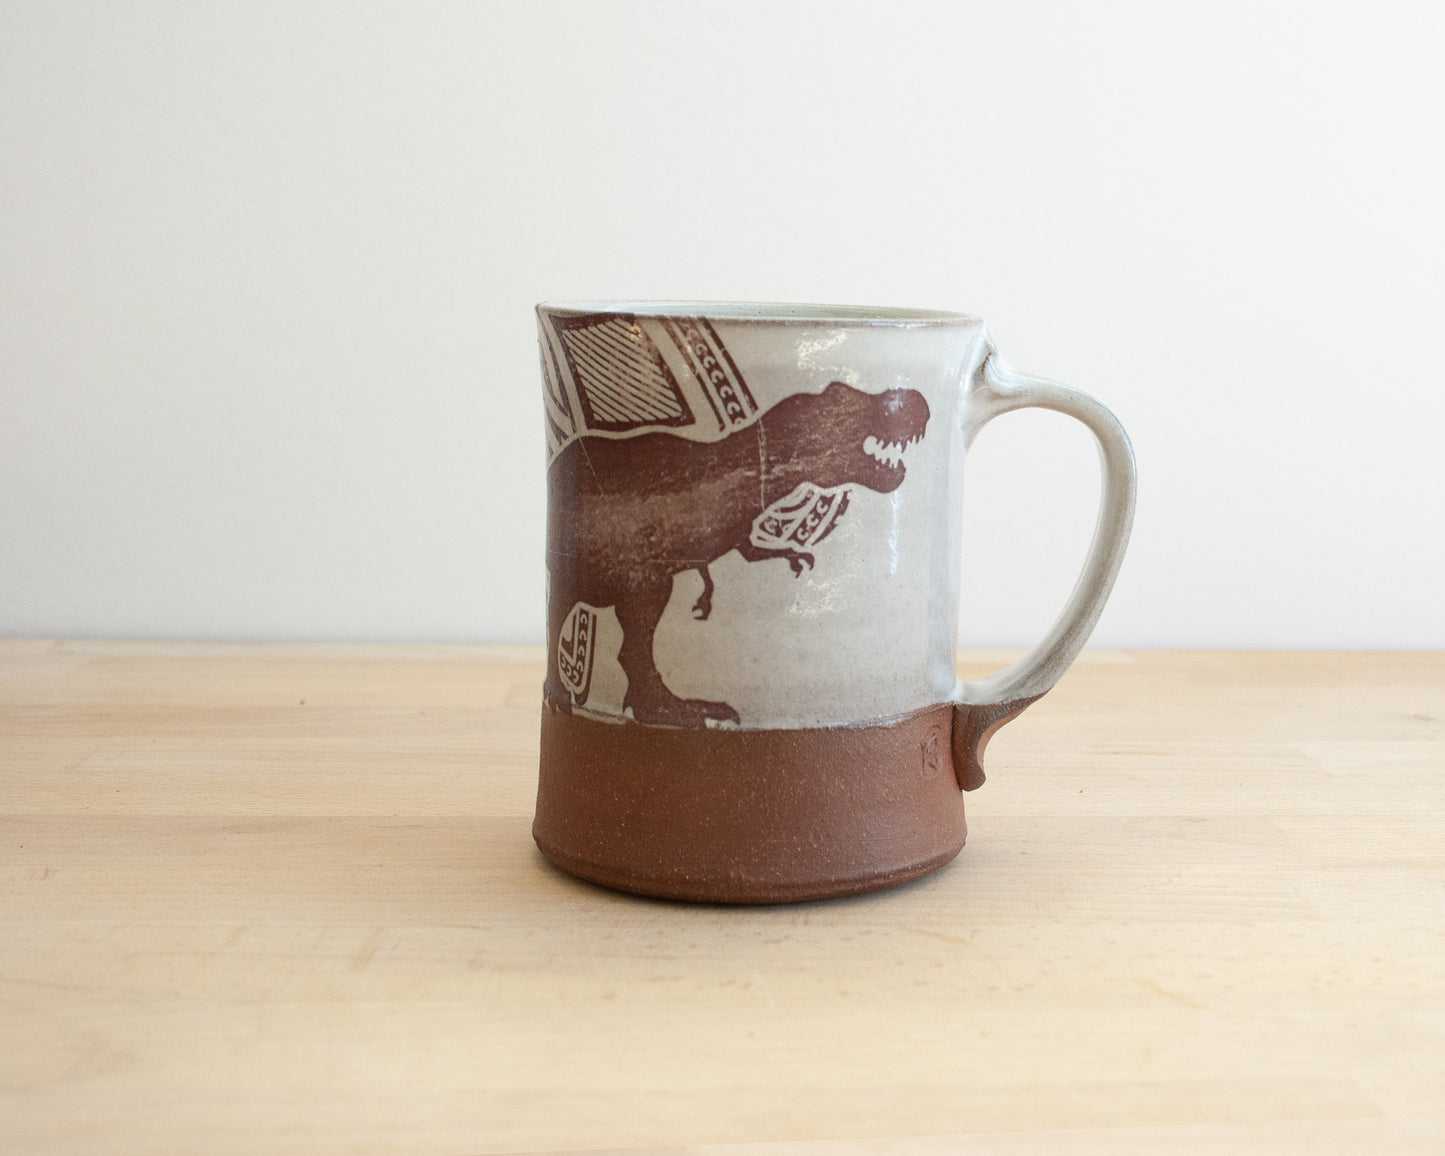 T-Rex Mug with pattern - white